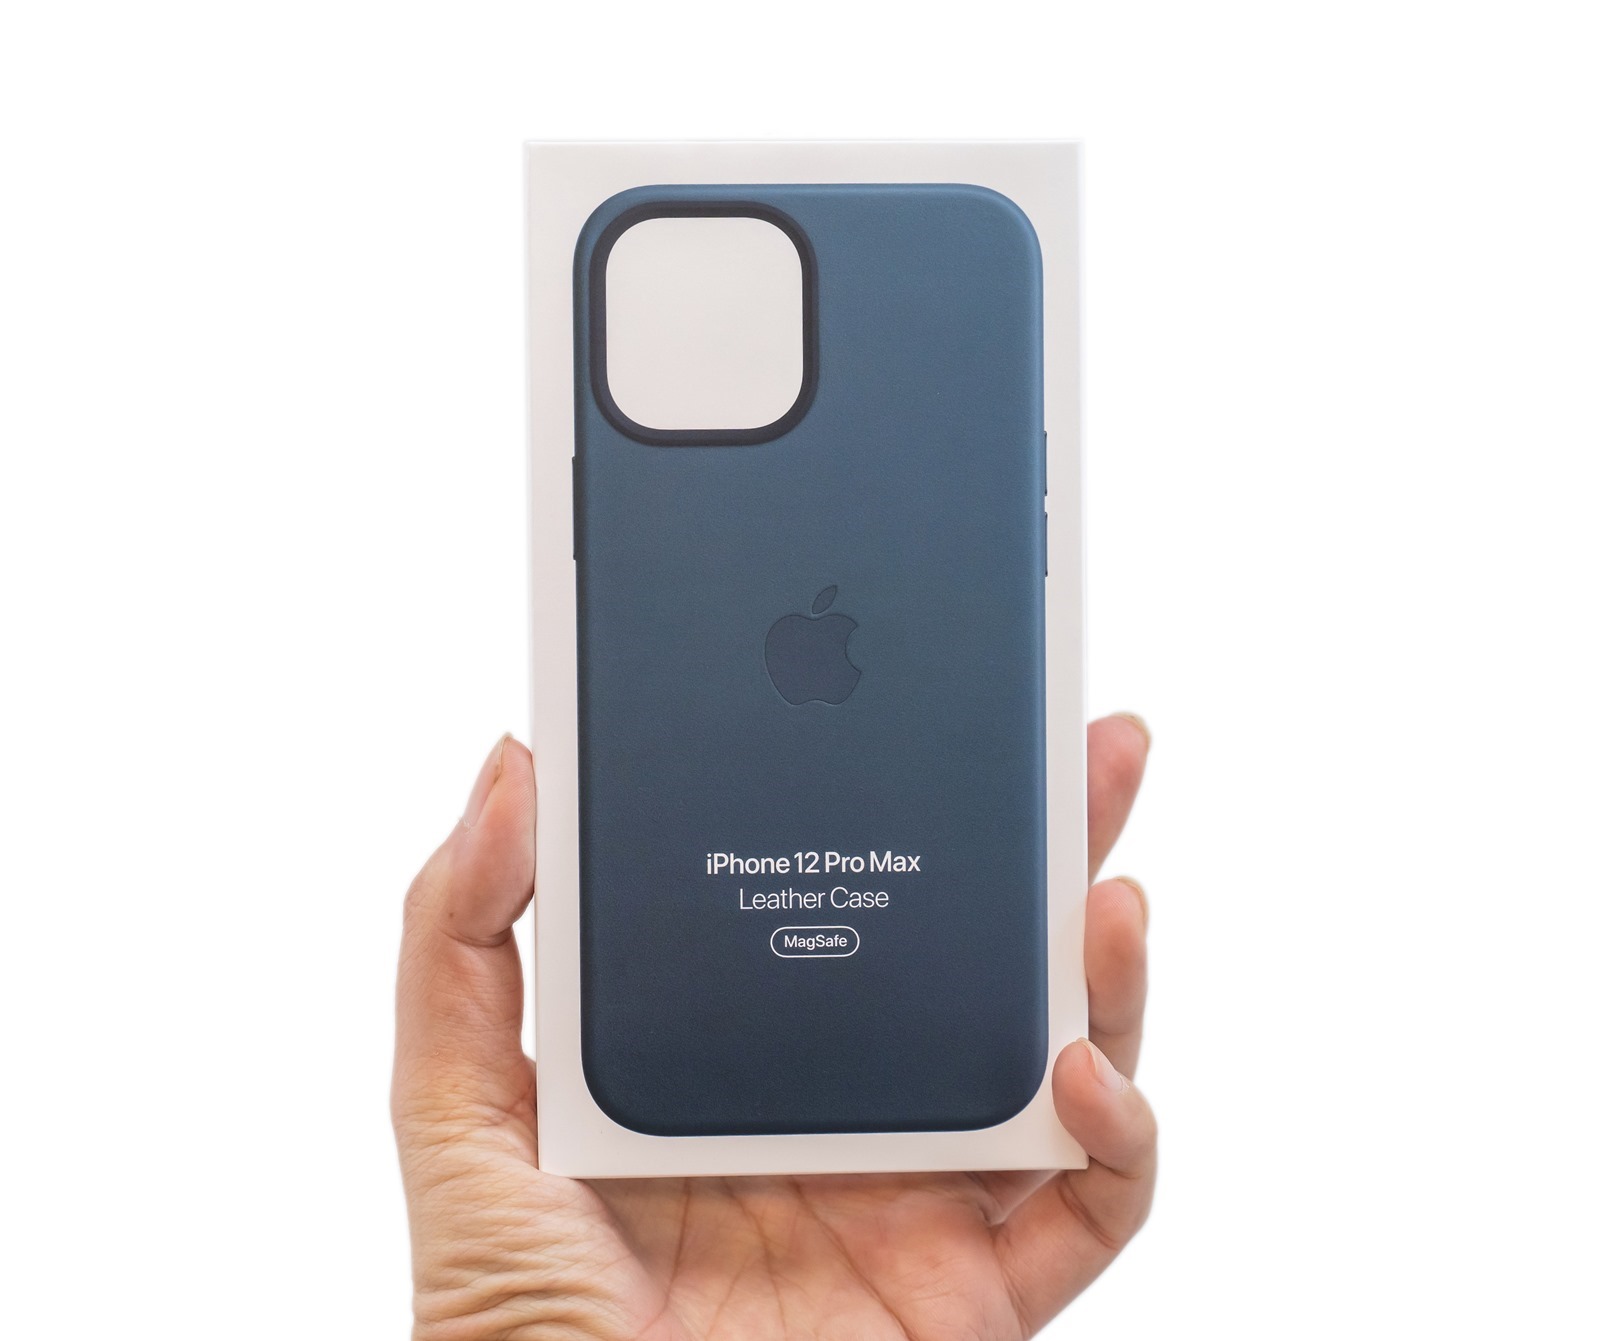 最強最大 iPhone 12 Pro Max 開箱！6.7 吋大螢幕與全新感光元件 (Apple iPhone 12 Pro Max 金色機) + 性能電力/充電實測 @3C 達人廖阿輝